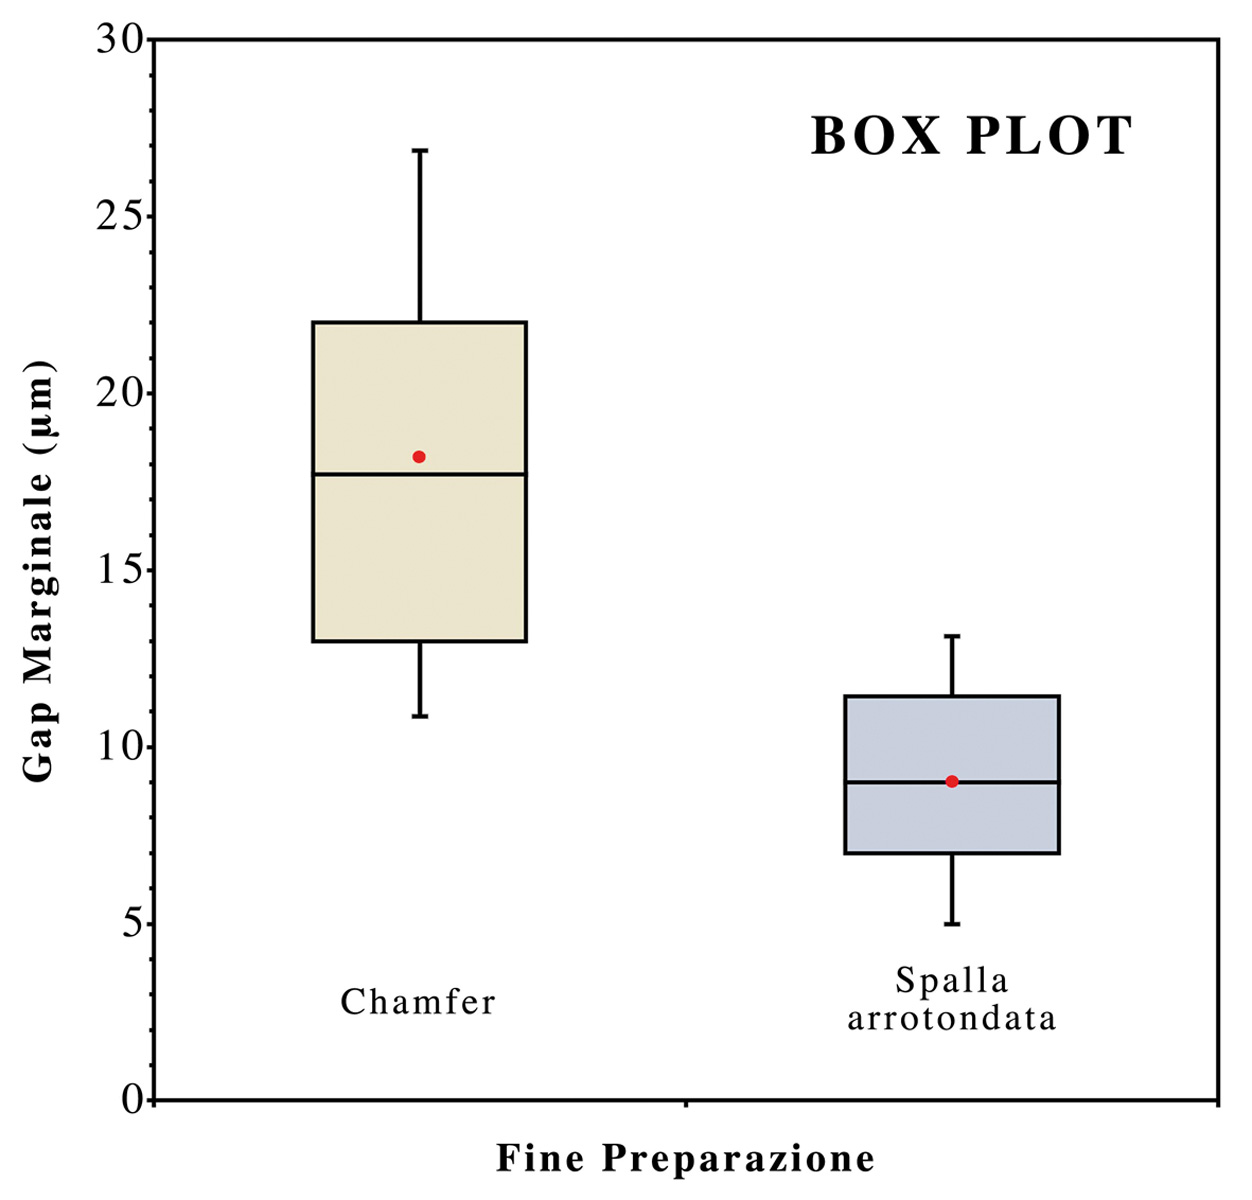 Il grafico (box plot) illustra la differenza significativa tra i due disegni di fine preparazione.